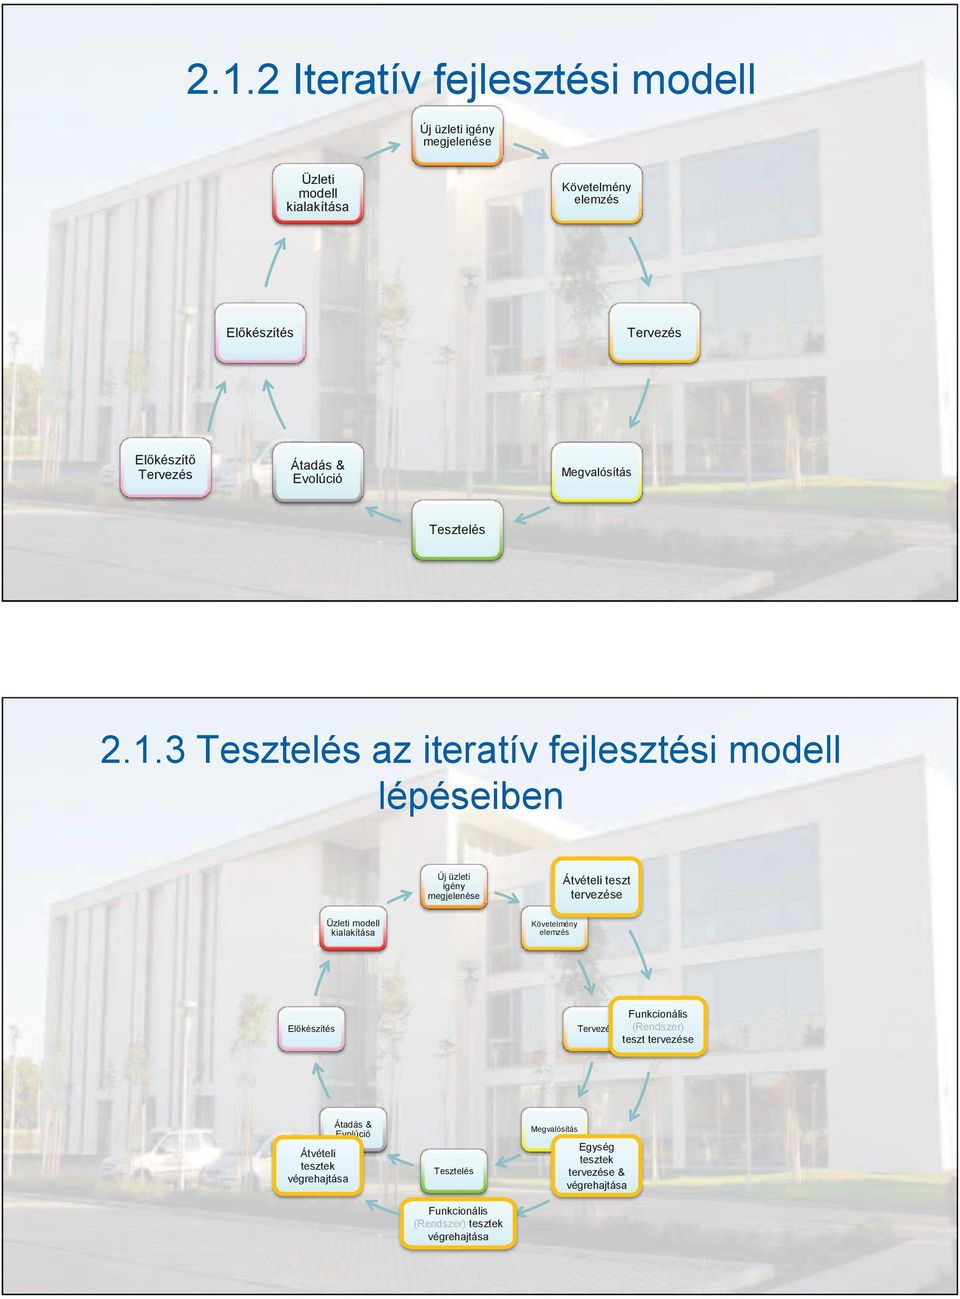 3 Tesztelés az iteratív fejlesztési modell lépéseiben Új üzleti igény megjelenése Átvételi teszt tervezése Üzleti modell kialakítása